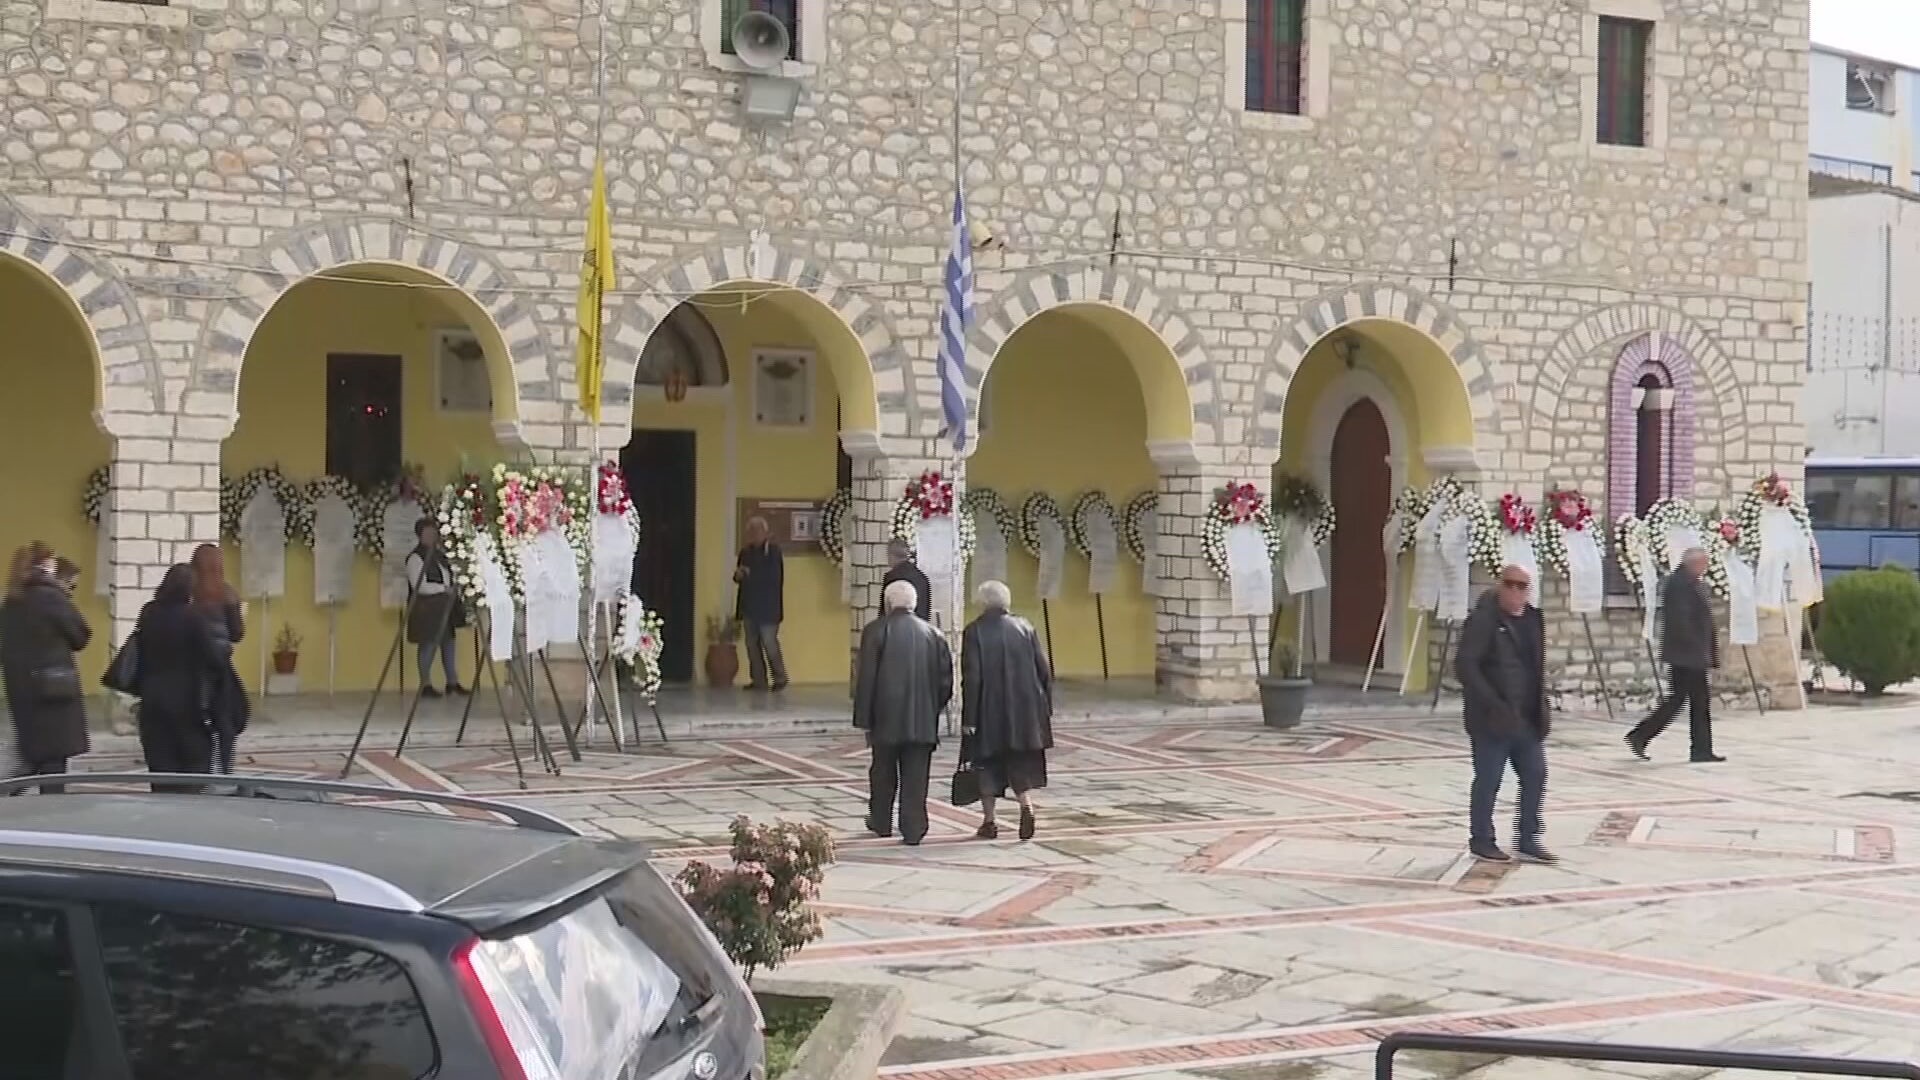 Στις 12 το  μεσημέρι η κηδεία της άτυχης 43χρονης νοσηλεύτριας που επέβαινε στην μοιραία αμαξοστοιχία στον Τύρναβο